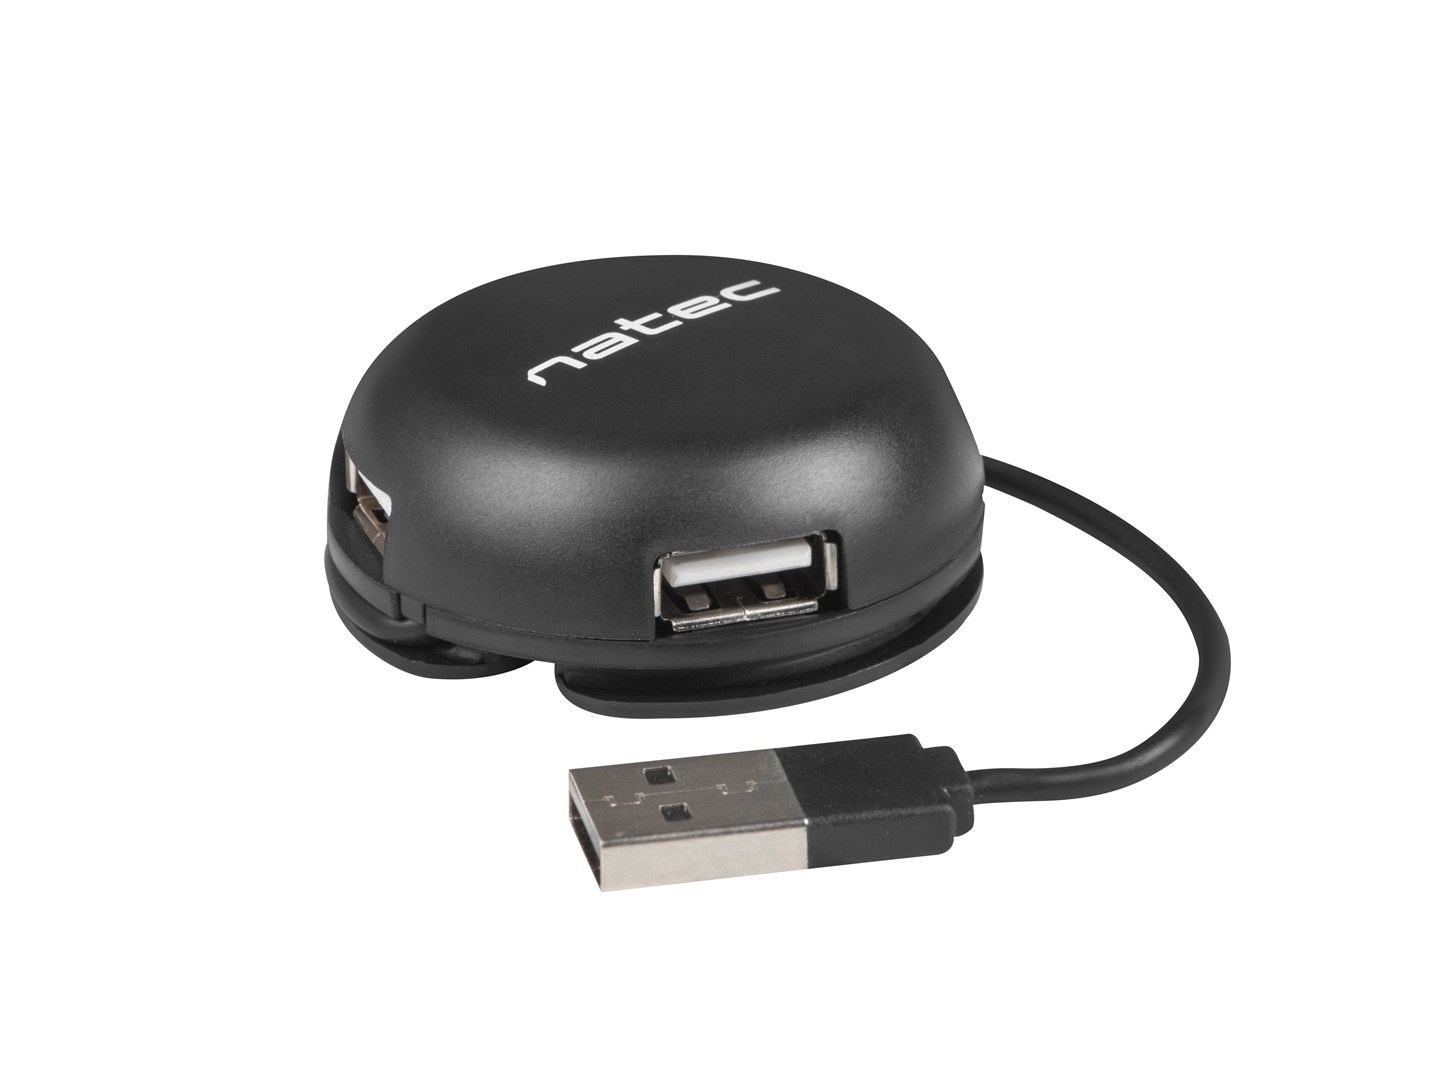 NATEC NHU-1330 rozbočovač rozhraní USB 2.0 480 Mbit/s Černá